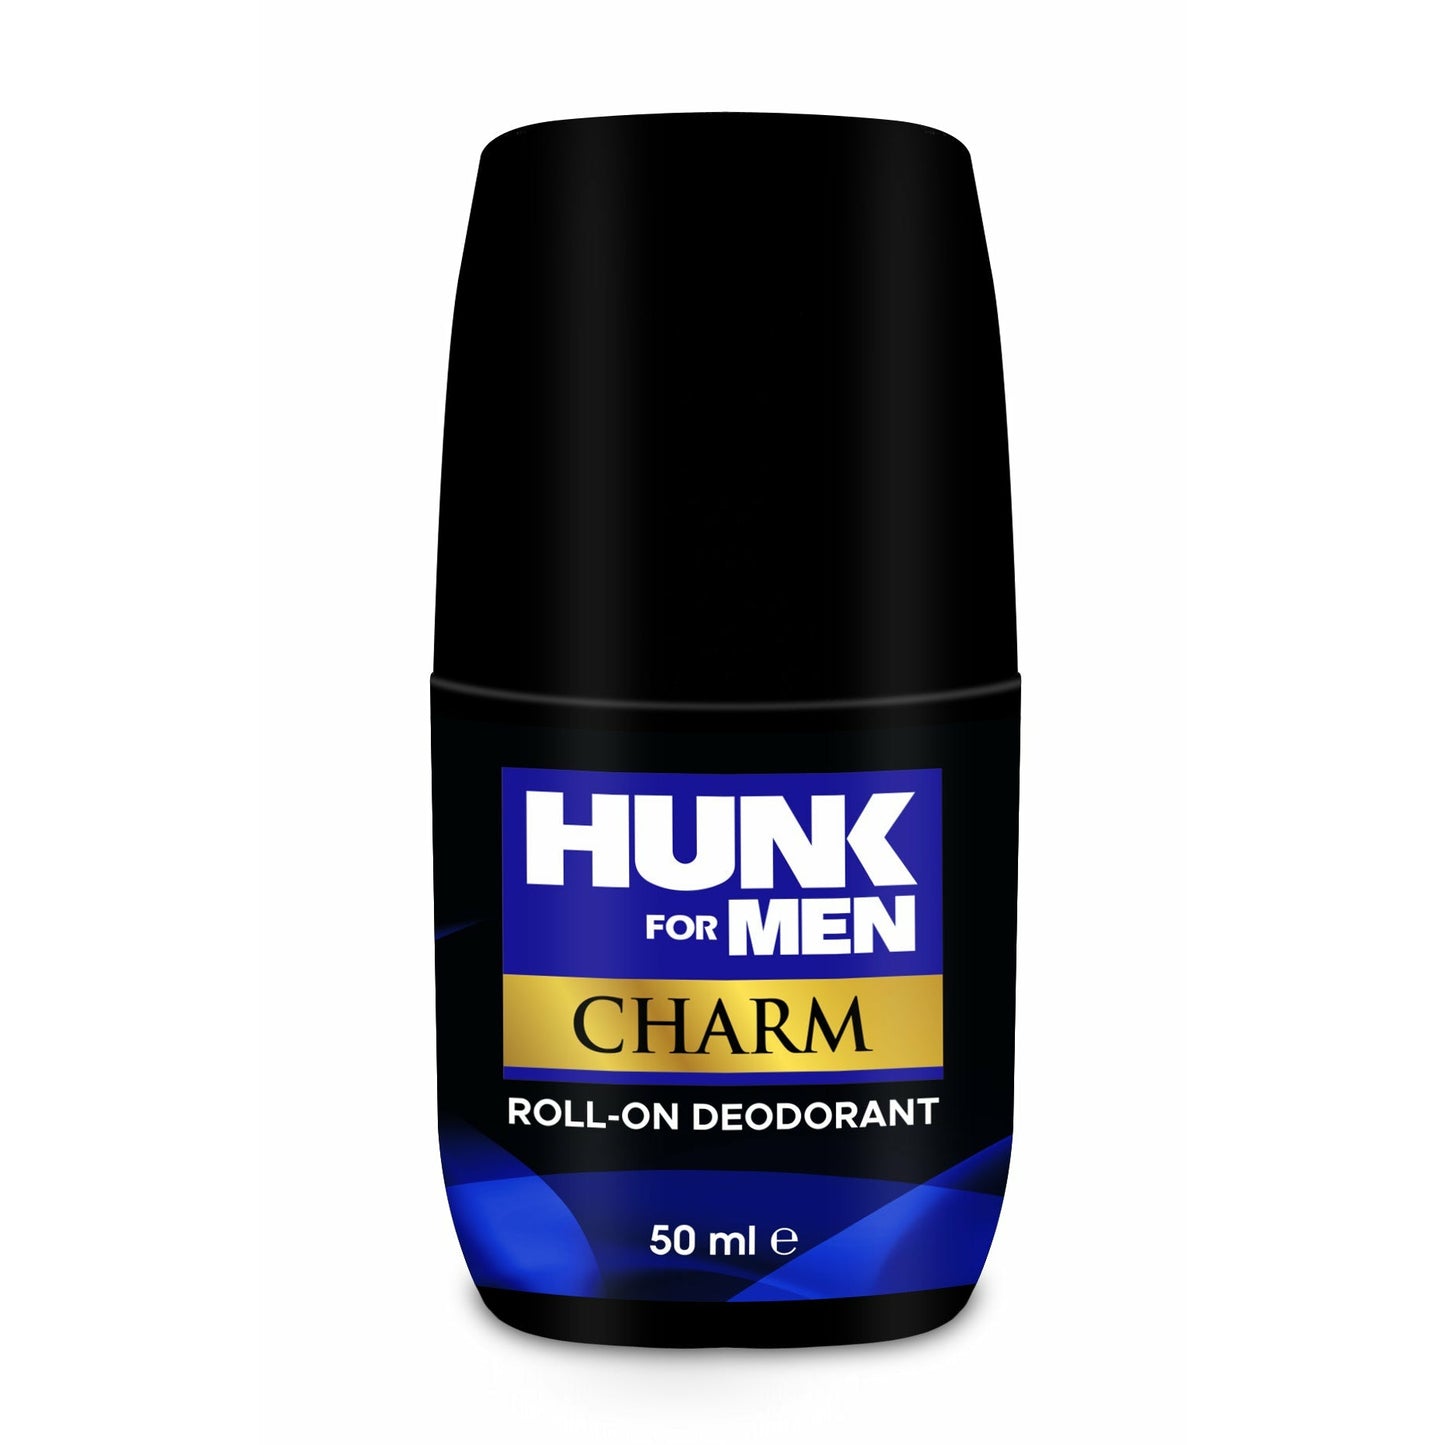 Roll On Deodorant For Men